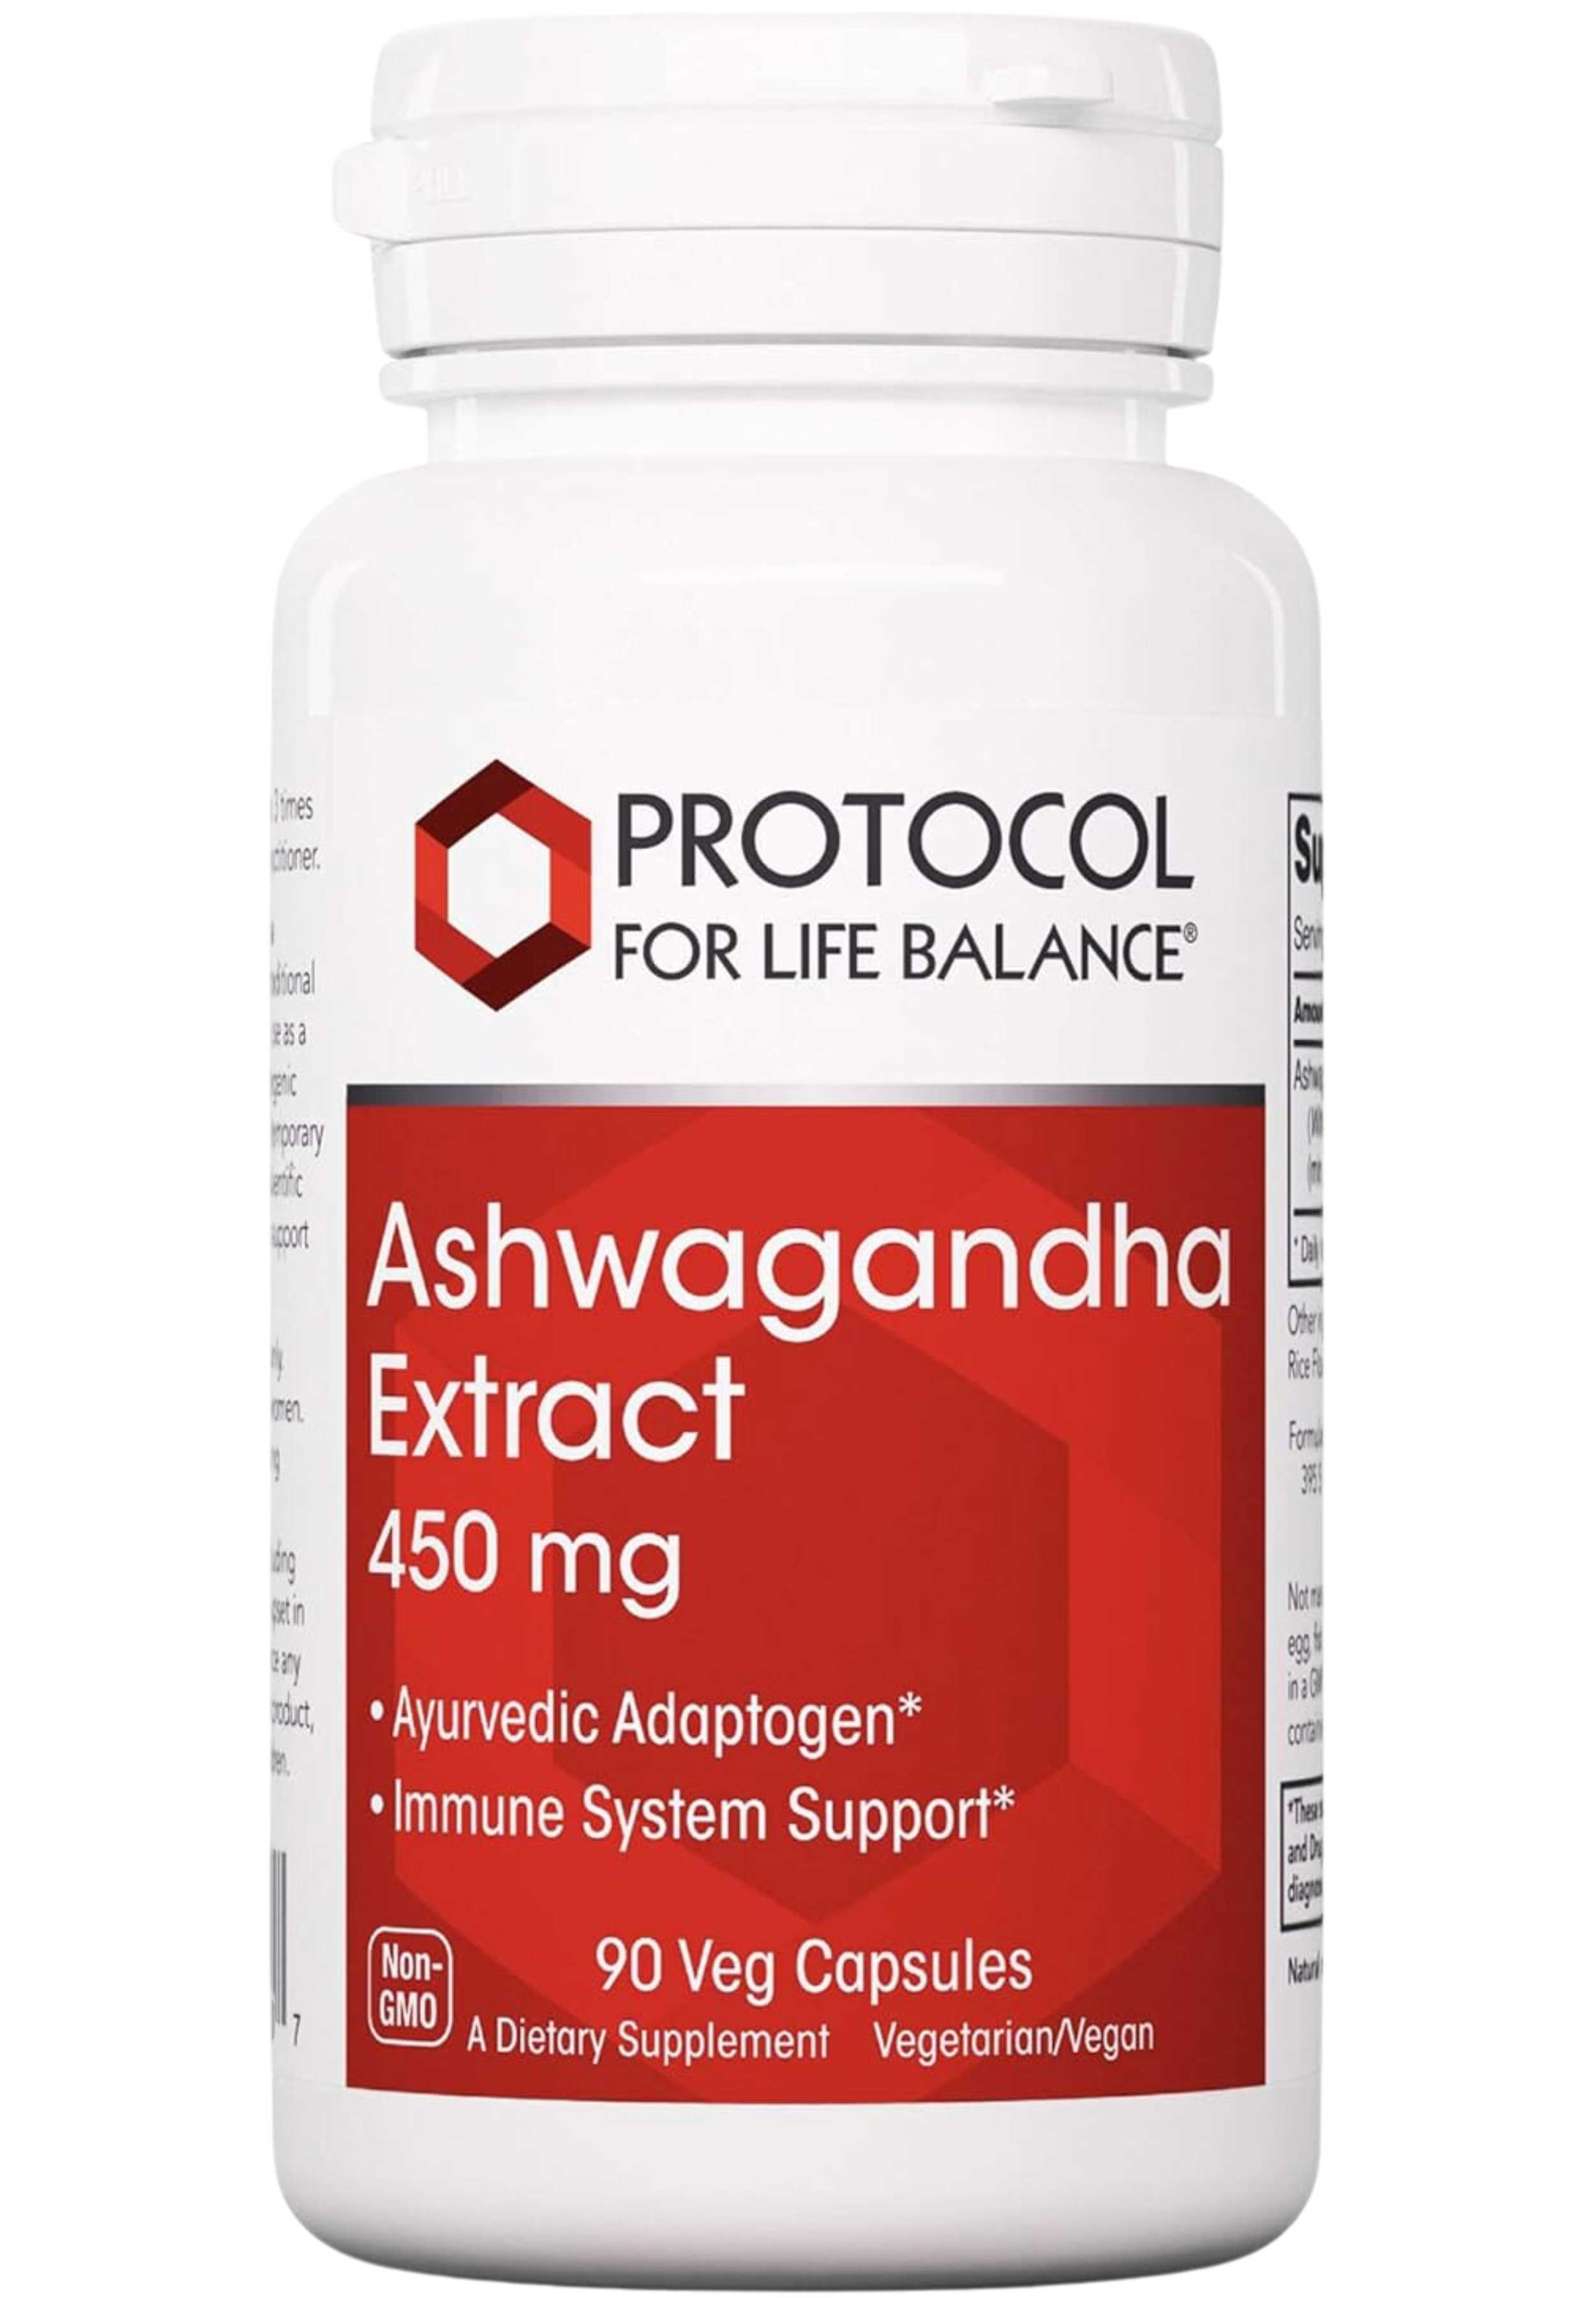 Protocol for Life Balance Ashwagandha Extract 450 mg